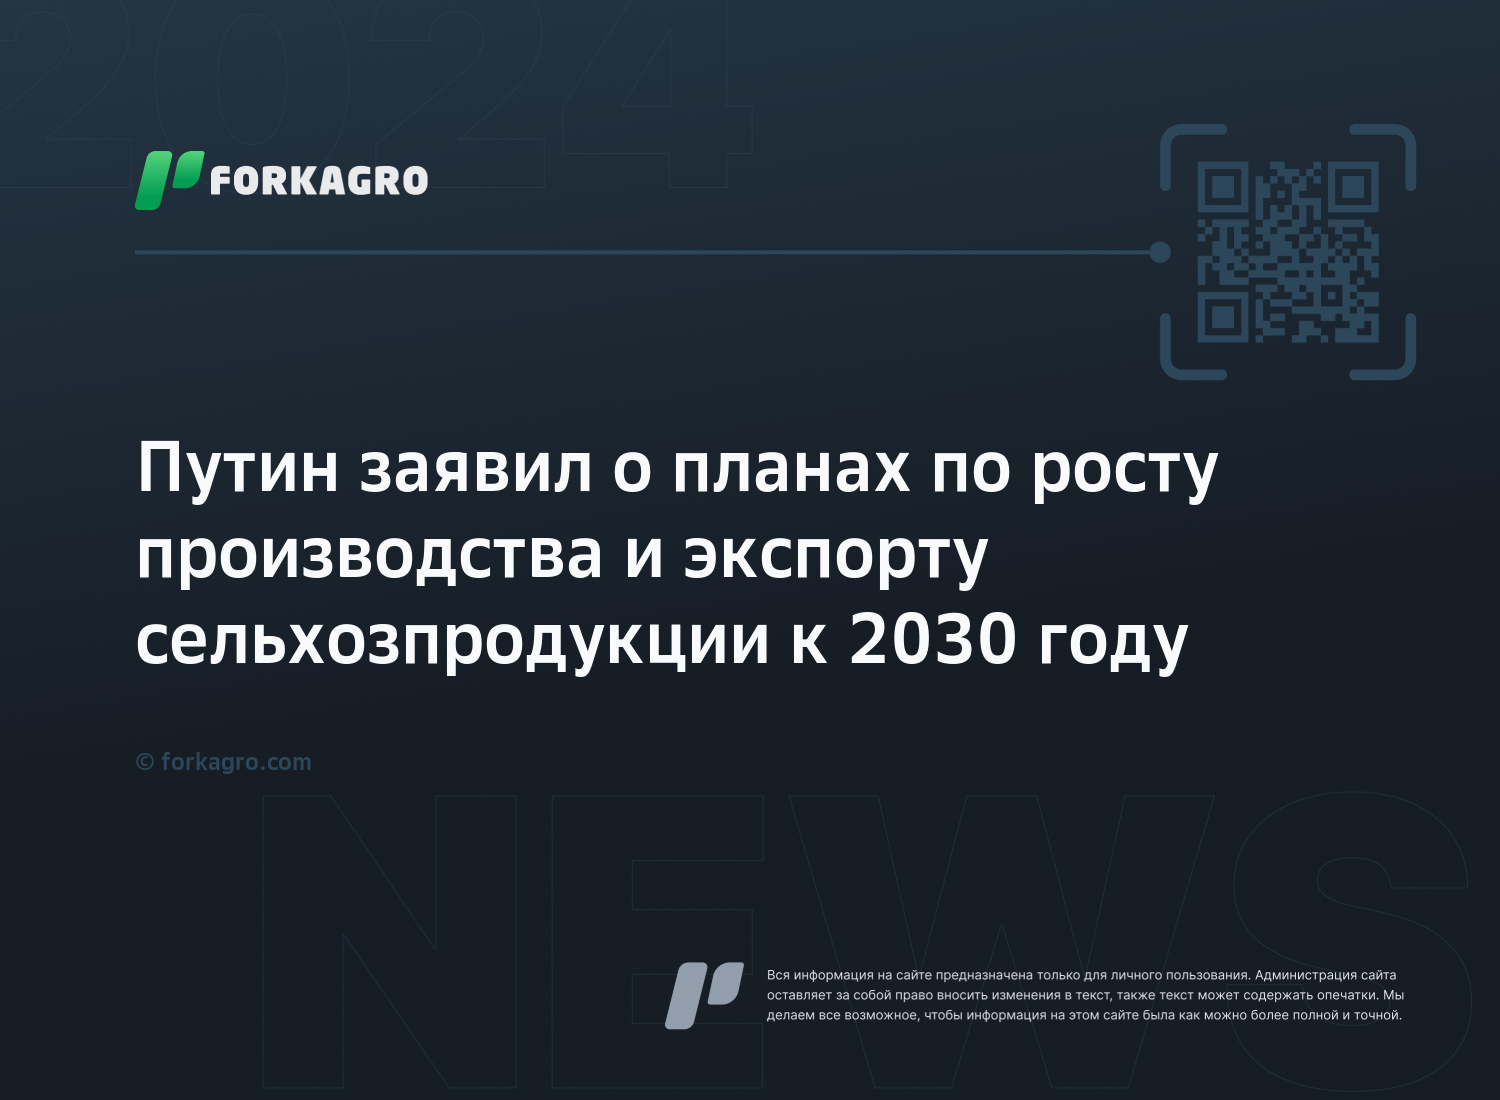 Путин заявил о планах по росту производства и экспорту сельхозпродукции к 2030 году